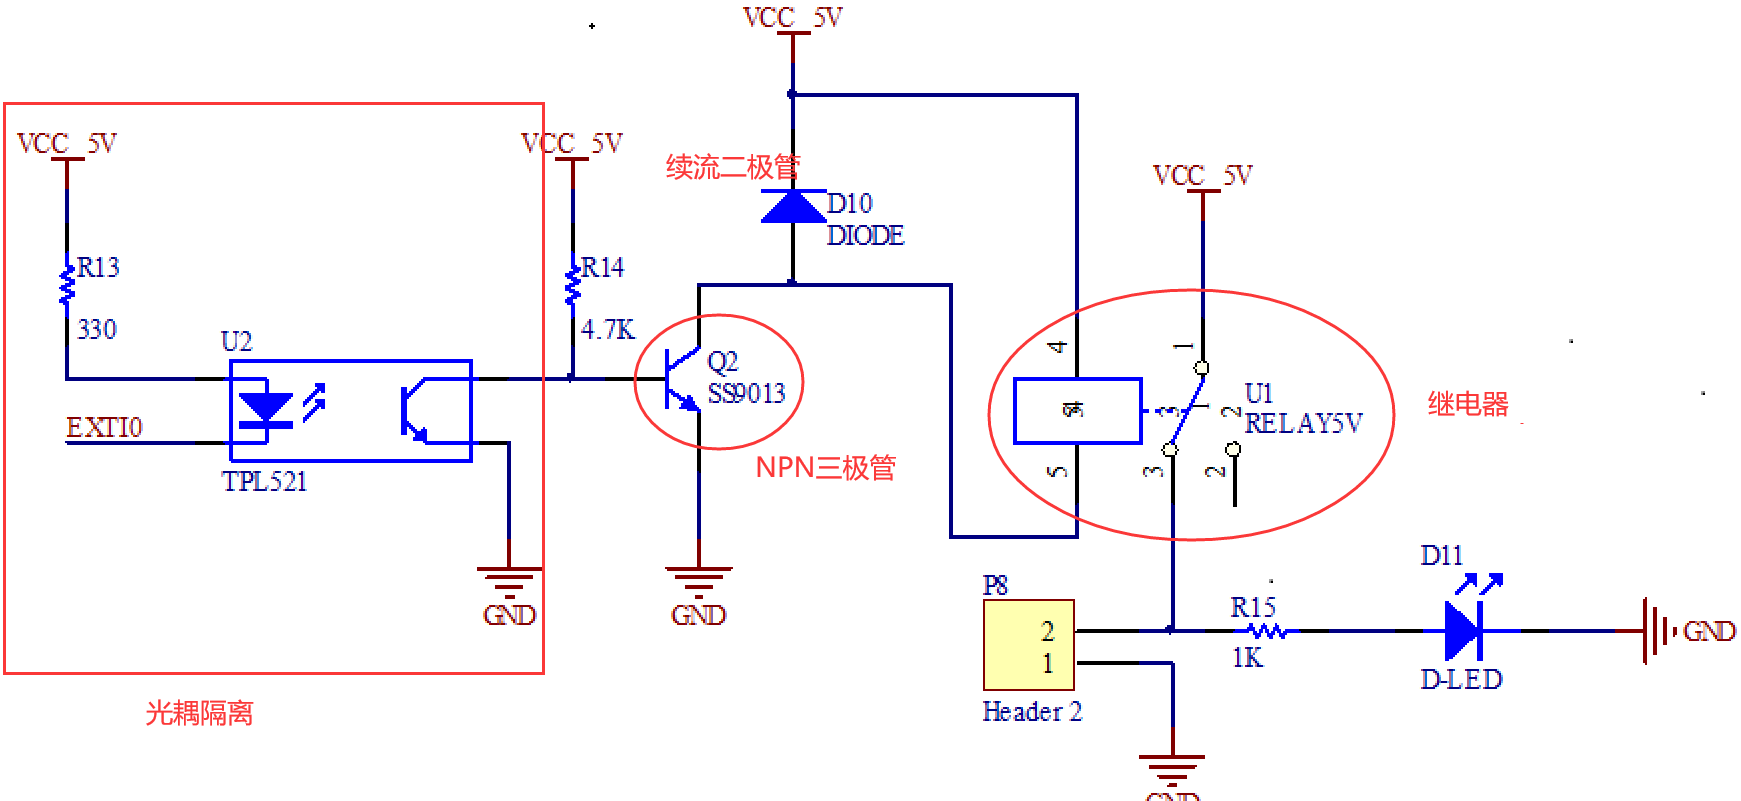 继电器电路原理图,pnp和npn三极管介绍